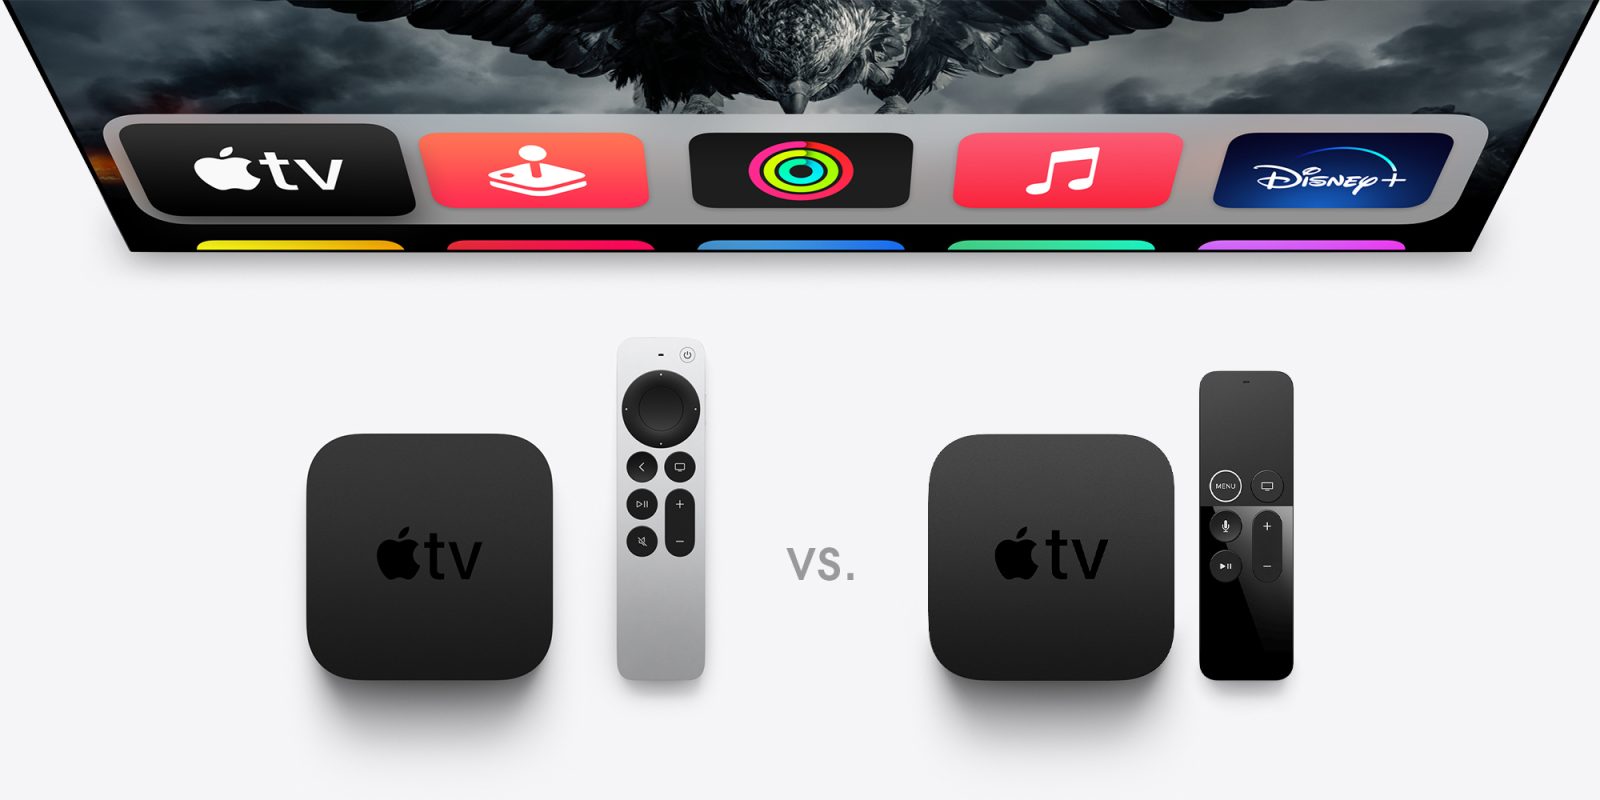 udslettelse vedtage Brudgom New Apple TV 4K vs old Apple TV 4K: Specs, features, price - 9to5Mac